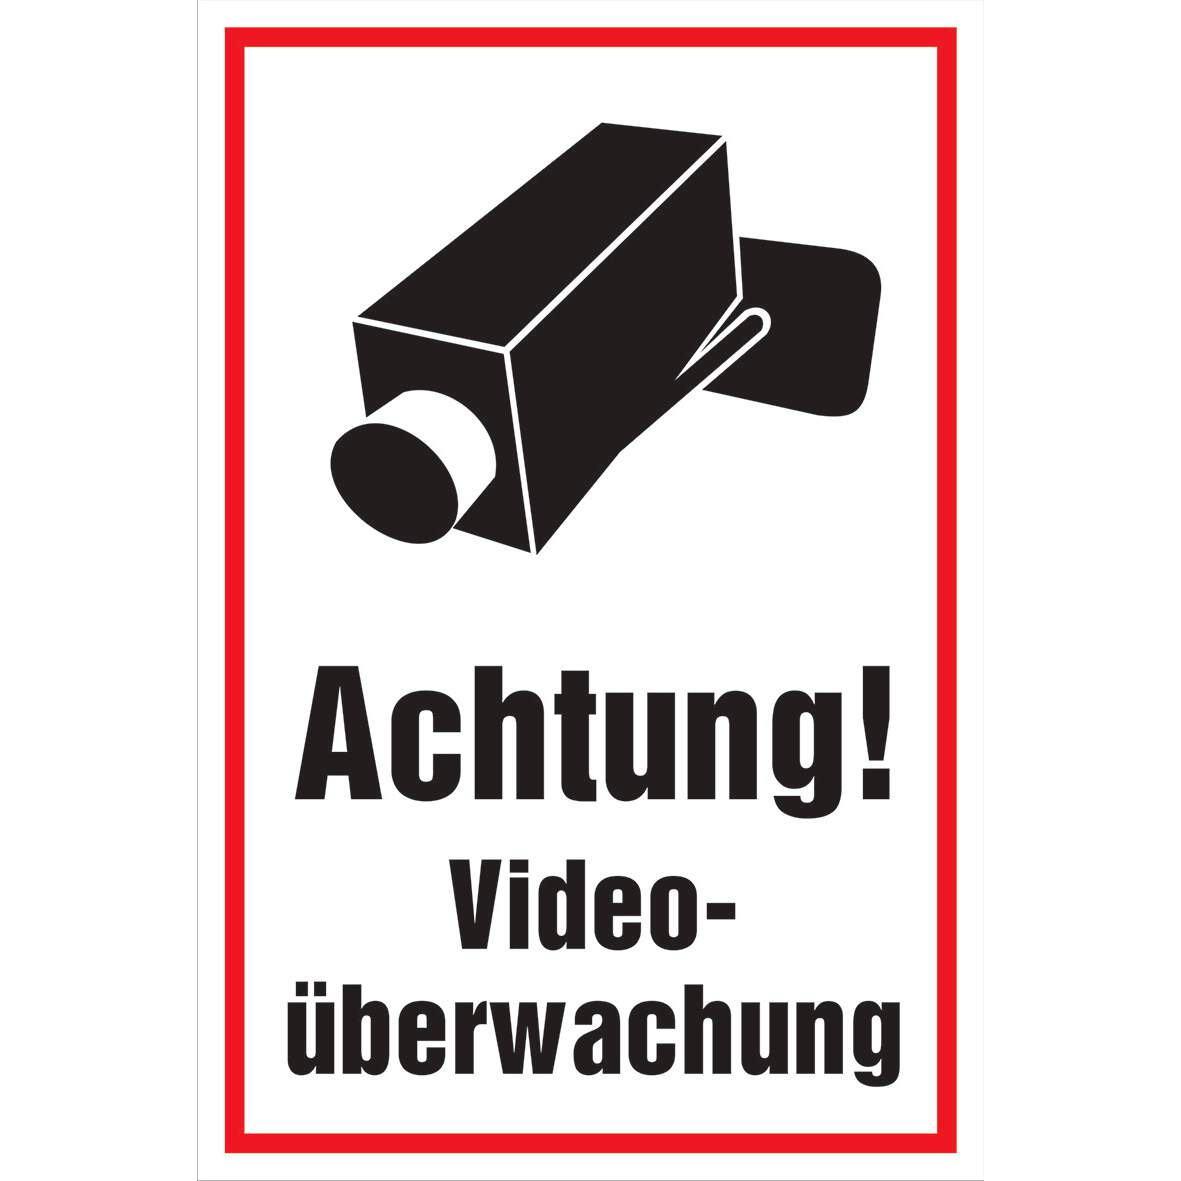 Hinweisschild gelb Videoüberwachung - Aufkleber-Shop